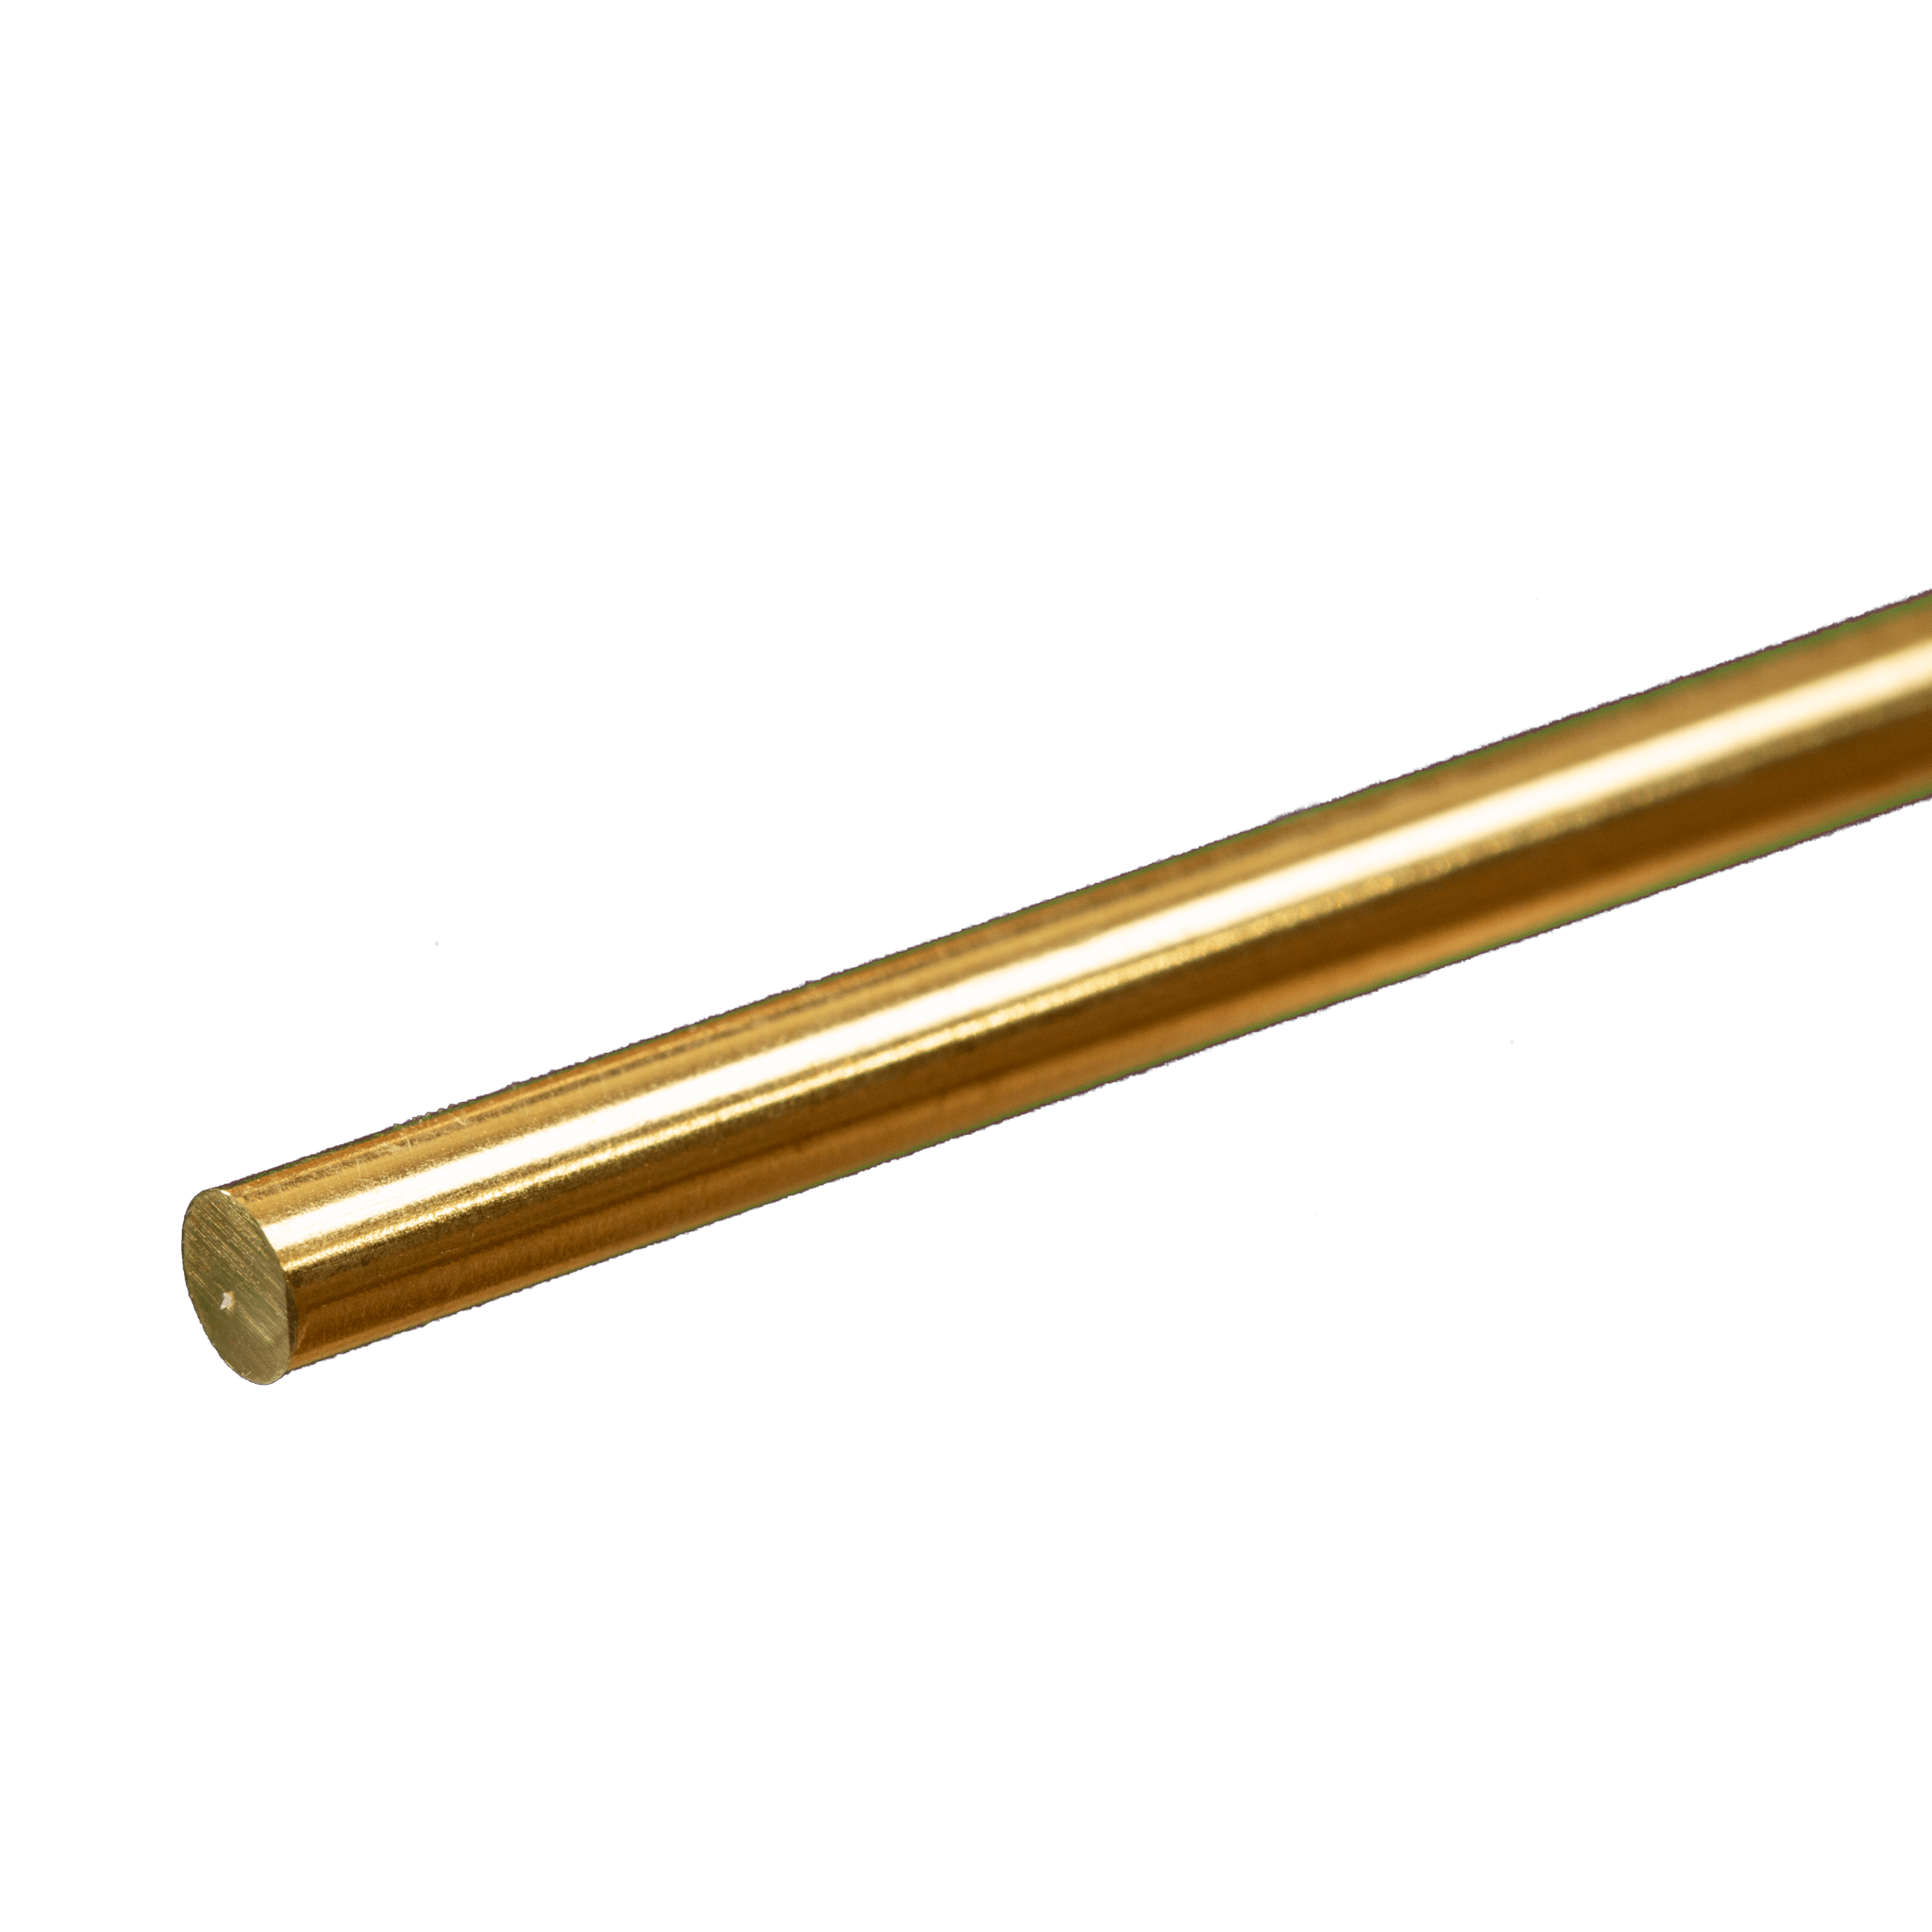 K&S Metals 8165 Round Brass Rod 5/32" OD x 12" Long (1 Piece)